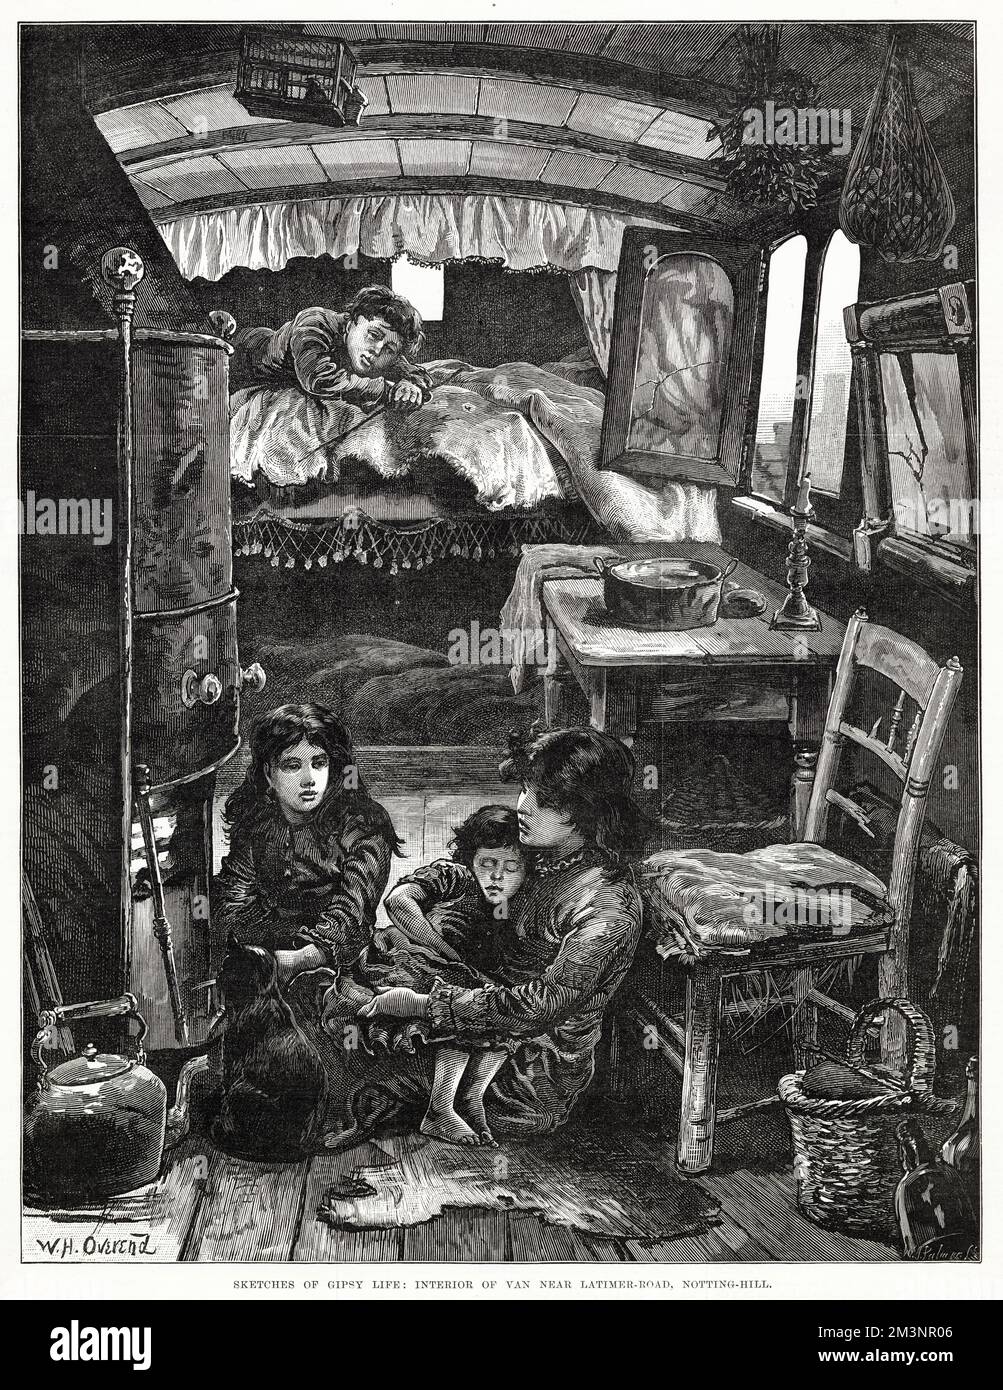 Conditions de vie à l'intérieur d'une caravane tzigane, près de Latimer Road. Date: 1879 Banque D'Images